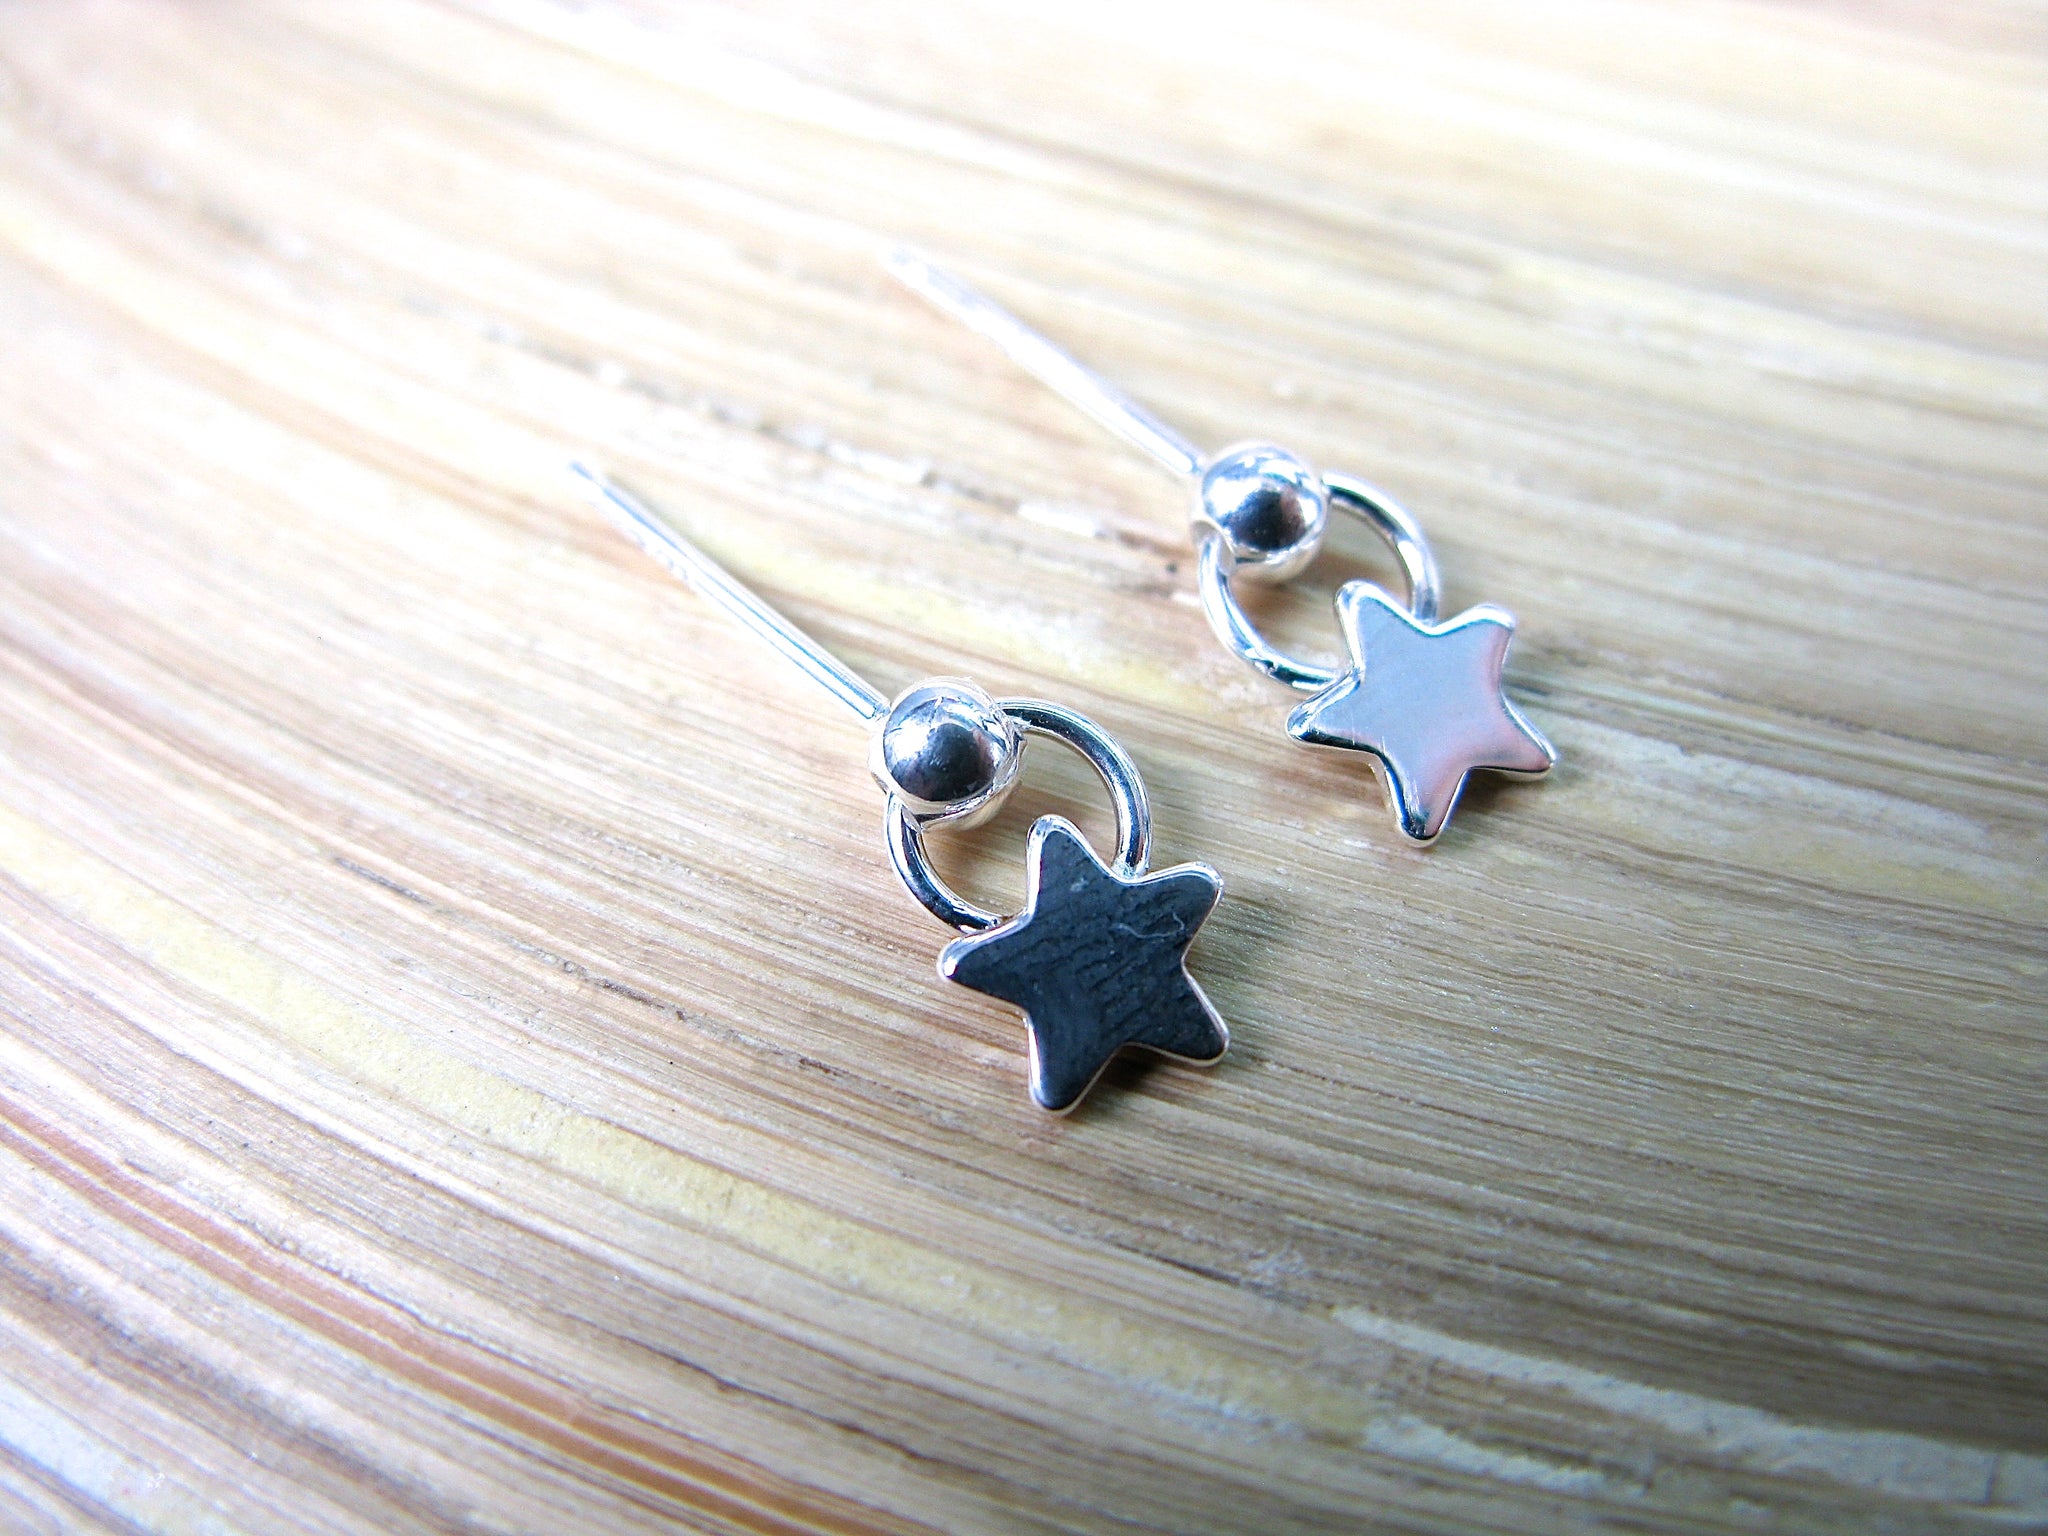 Star Stud Earrings in 925 Sterling Silver